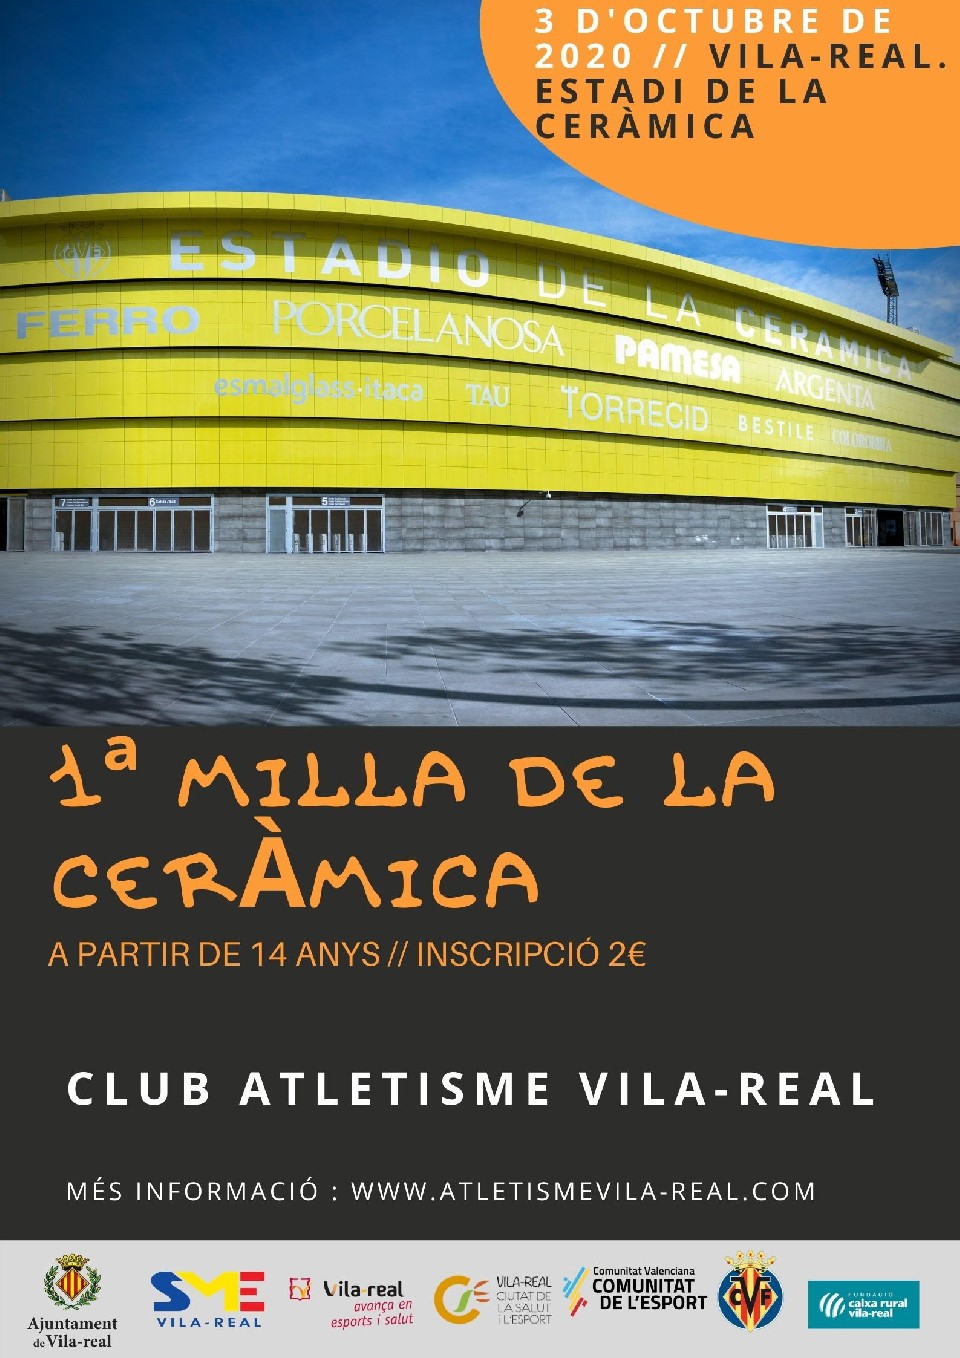 Vila-real recupera el pulso de las competiciones deportivas este fin de semana con la 1ª Milla de la Cerámica y The Weekend